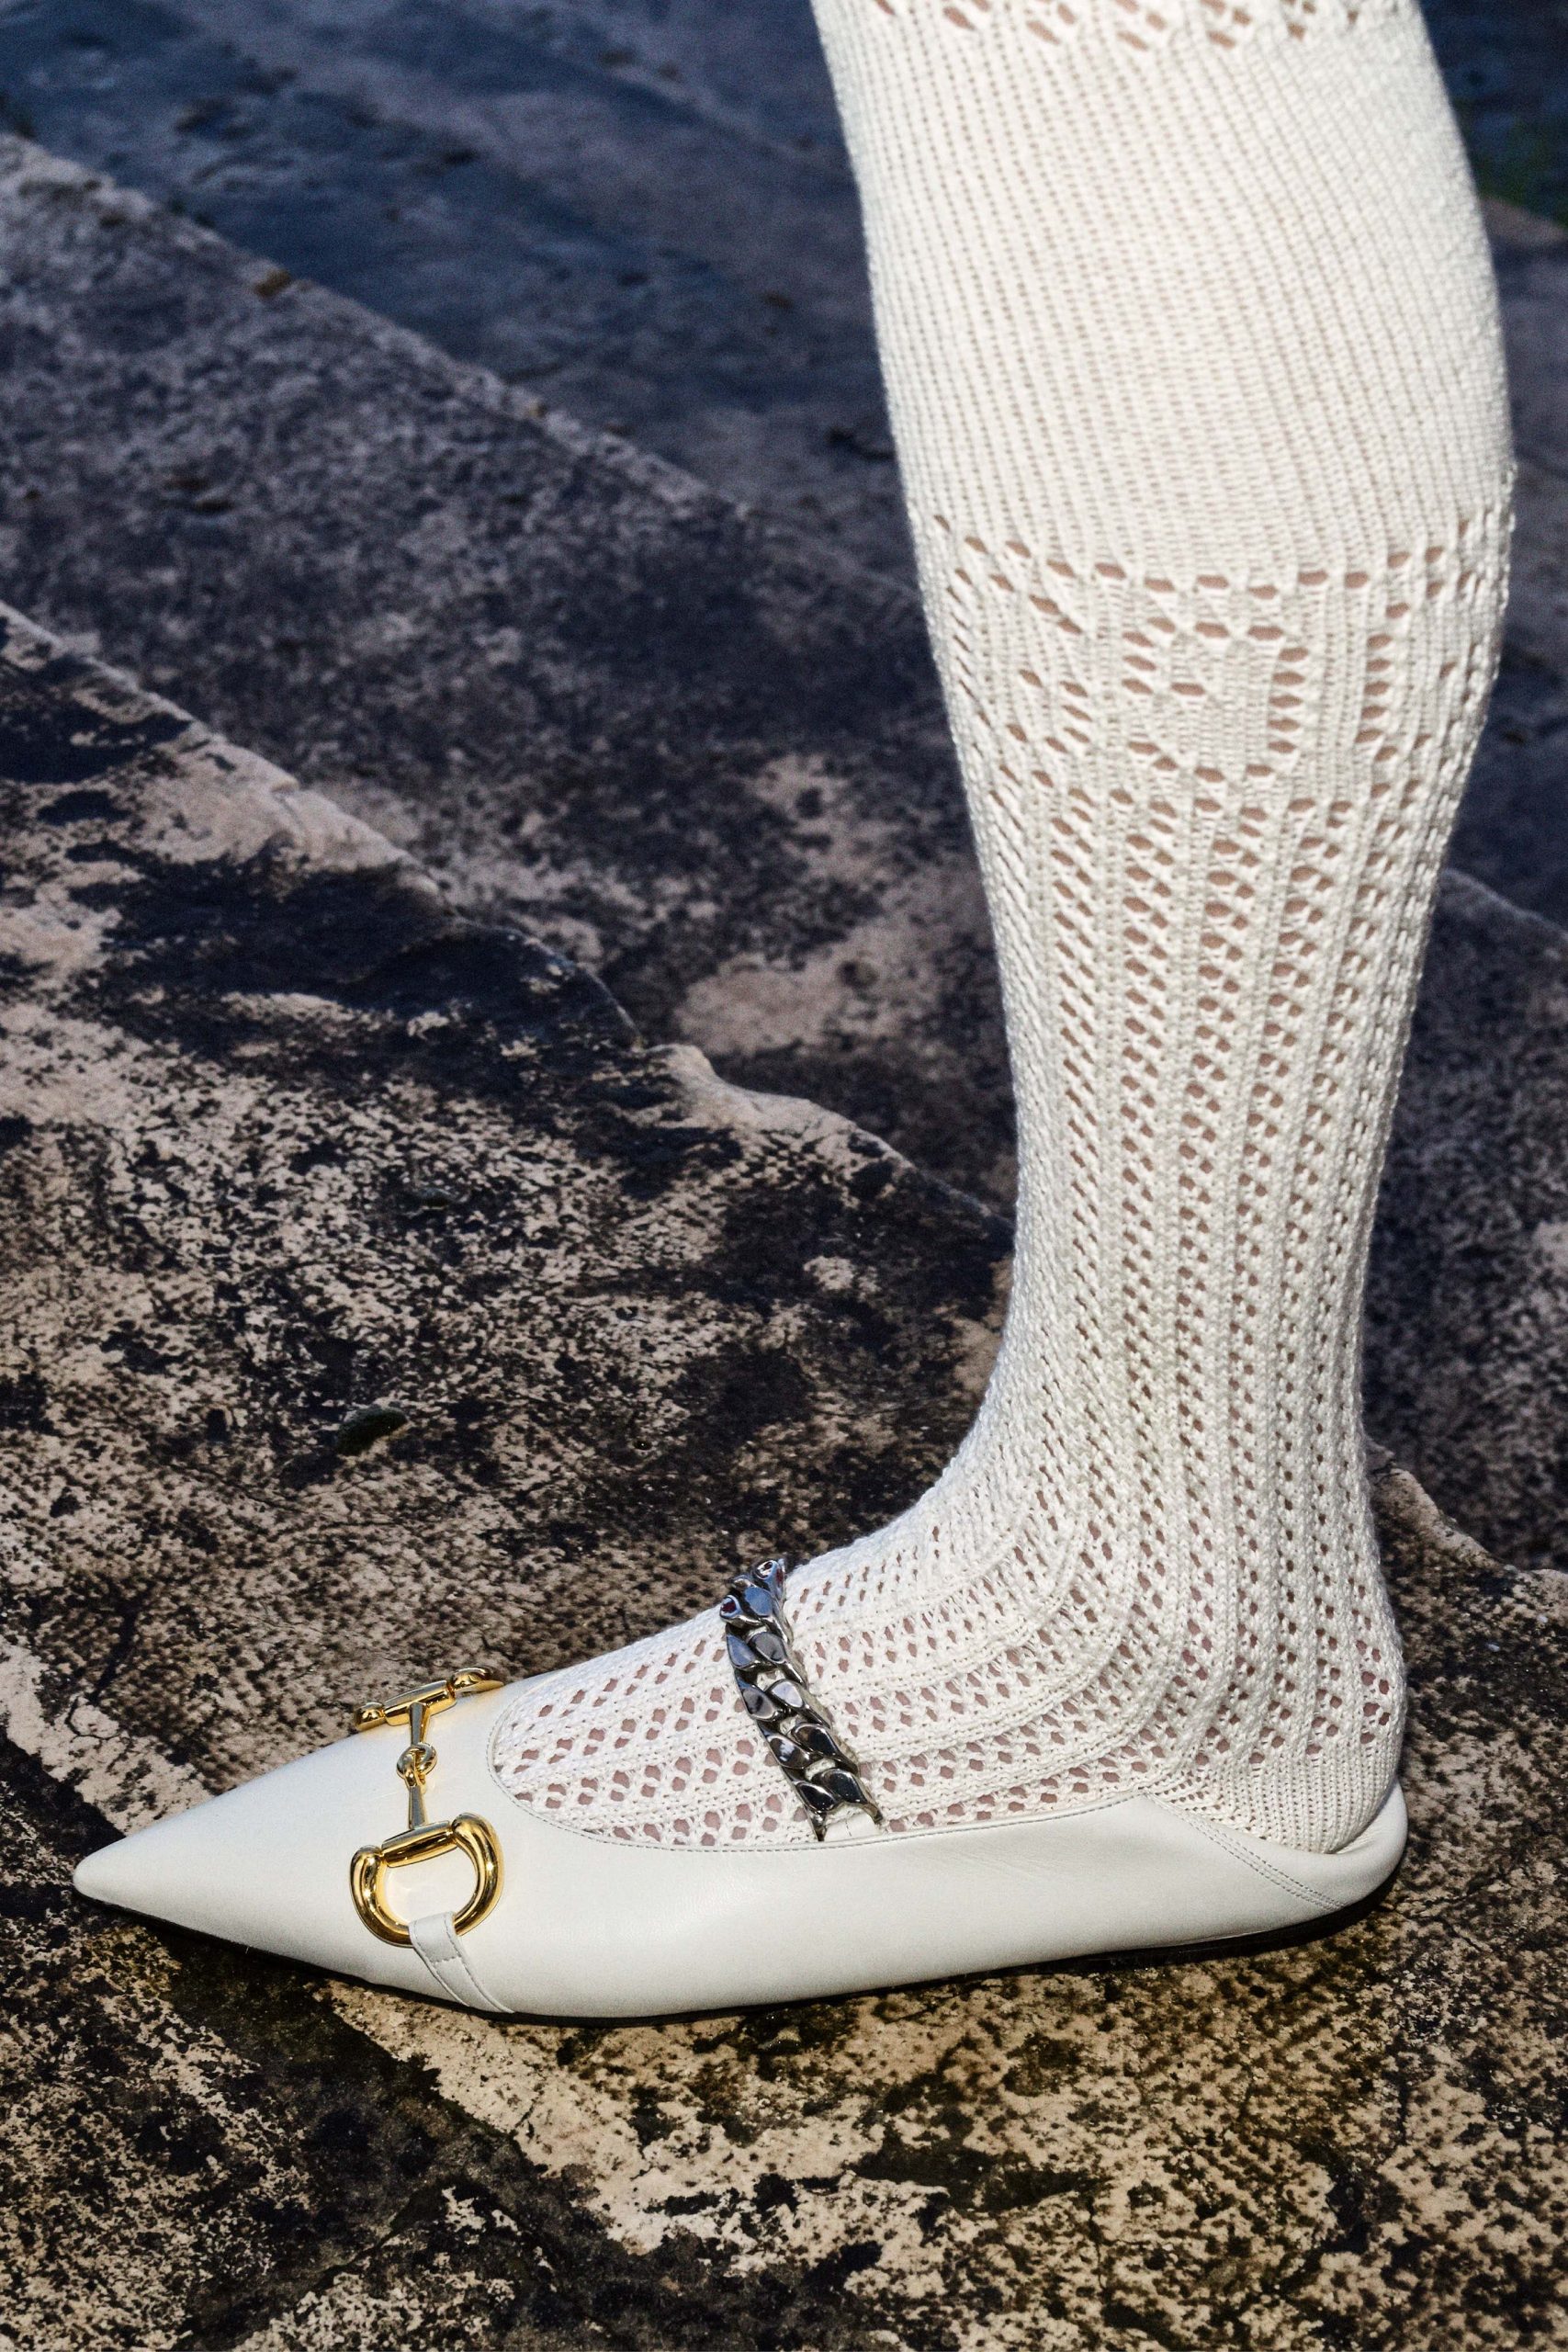 Giày búp bê mũi nhọn kết hợp với tất len cùng màu trong BST Thu – Đông 2020 của Gucci. (Ảnh: Gucci)